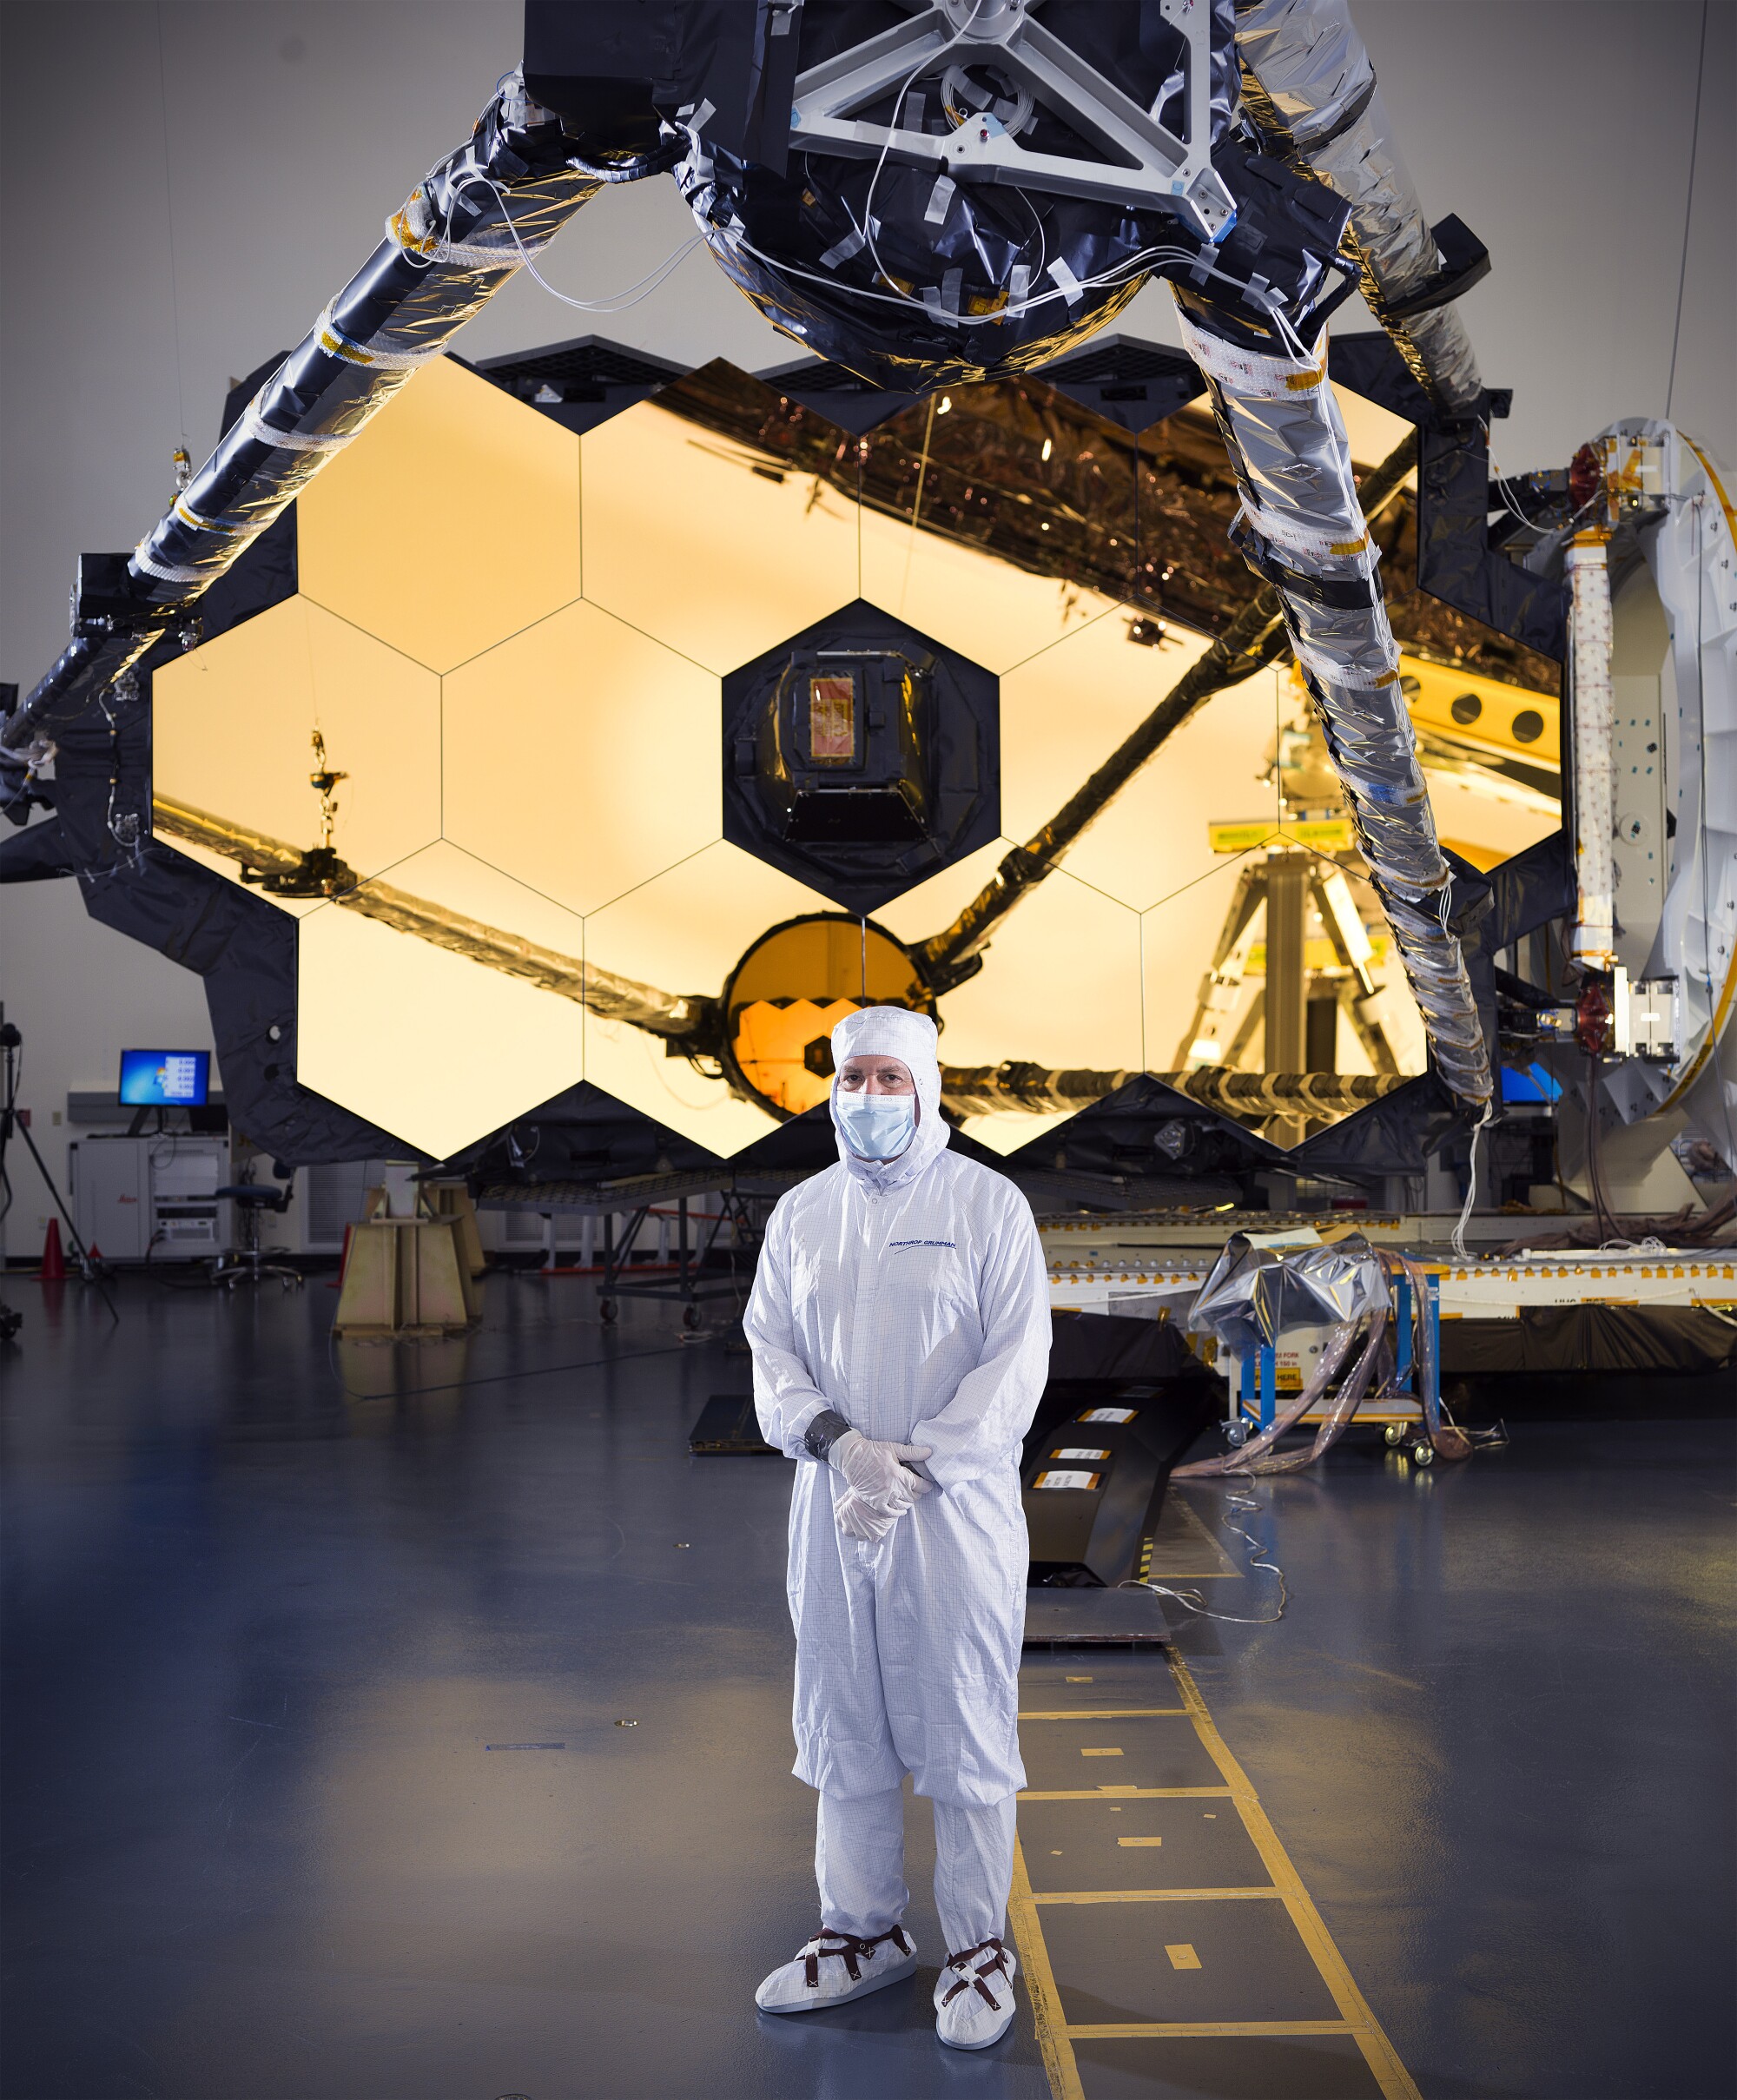 Seorang pria dengan pakaian putih bersih berdiri di depan cermin teleskop